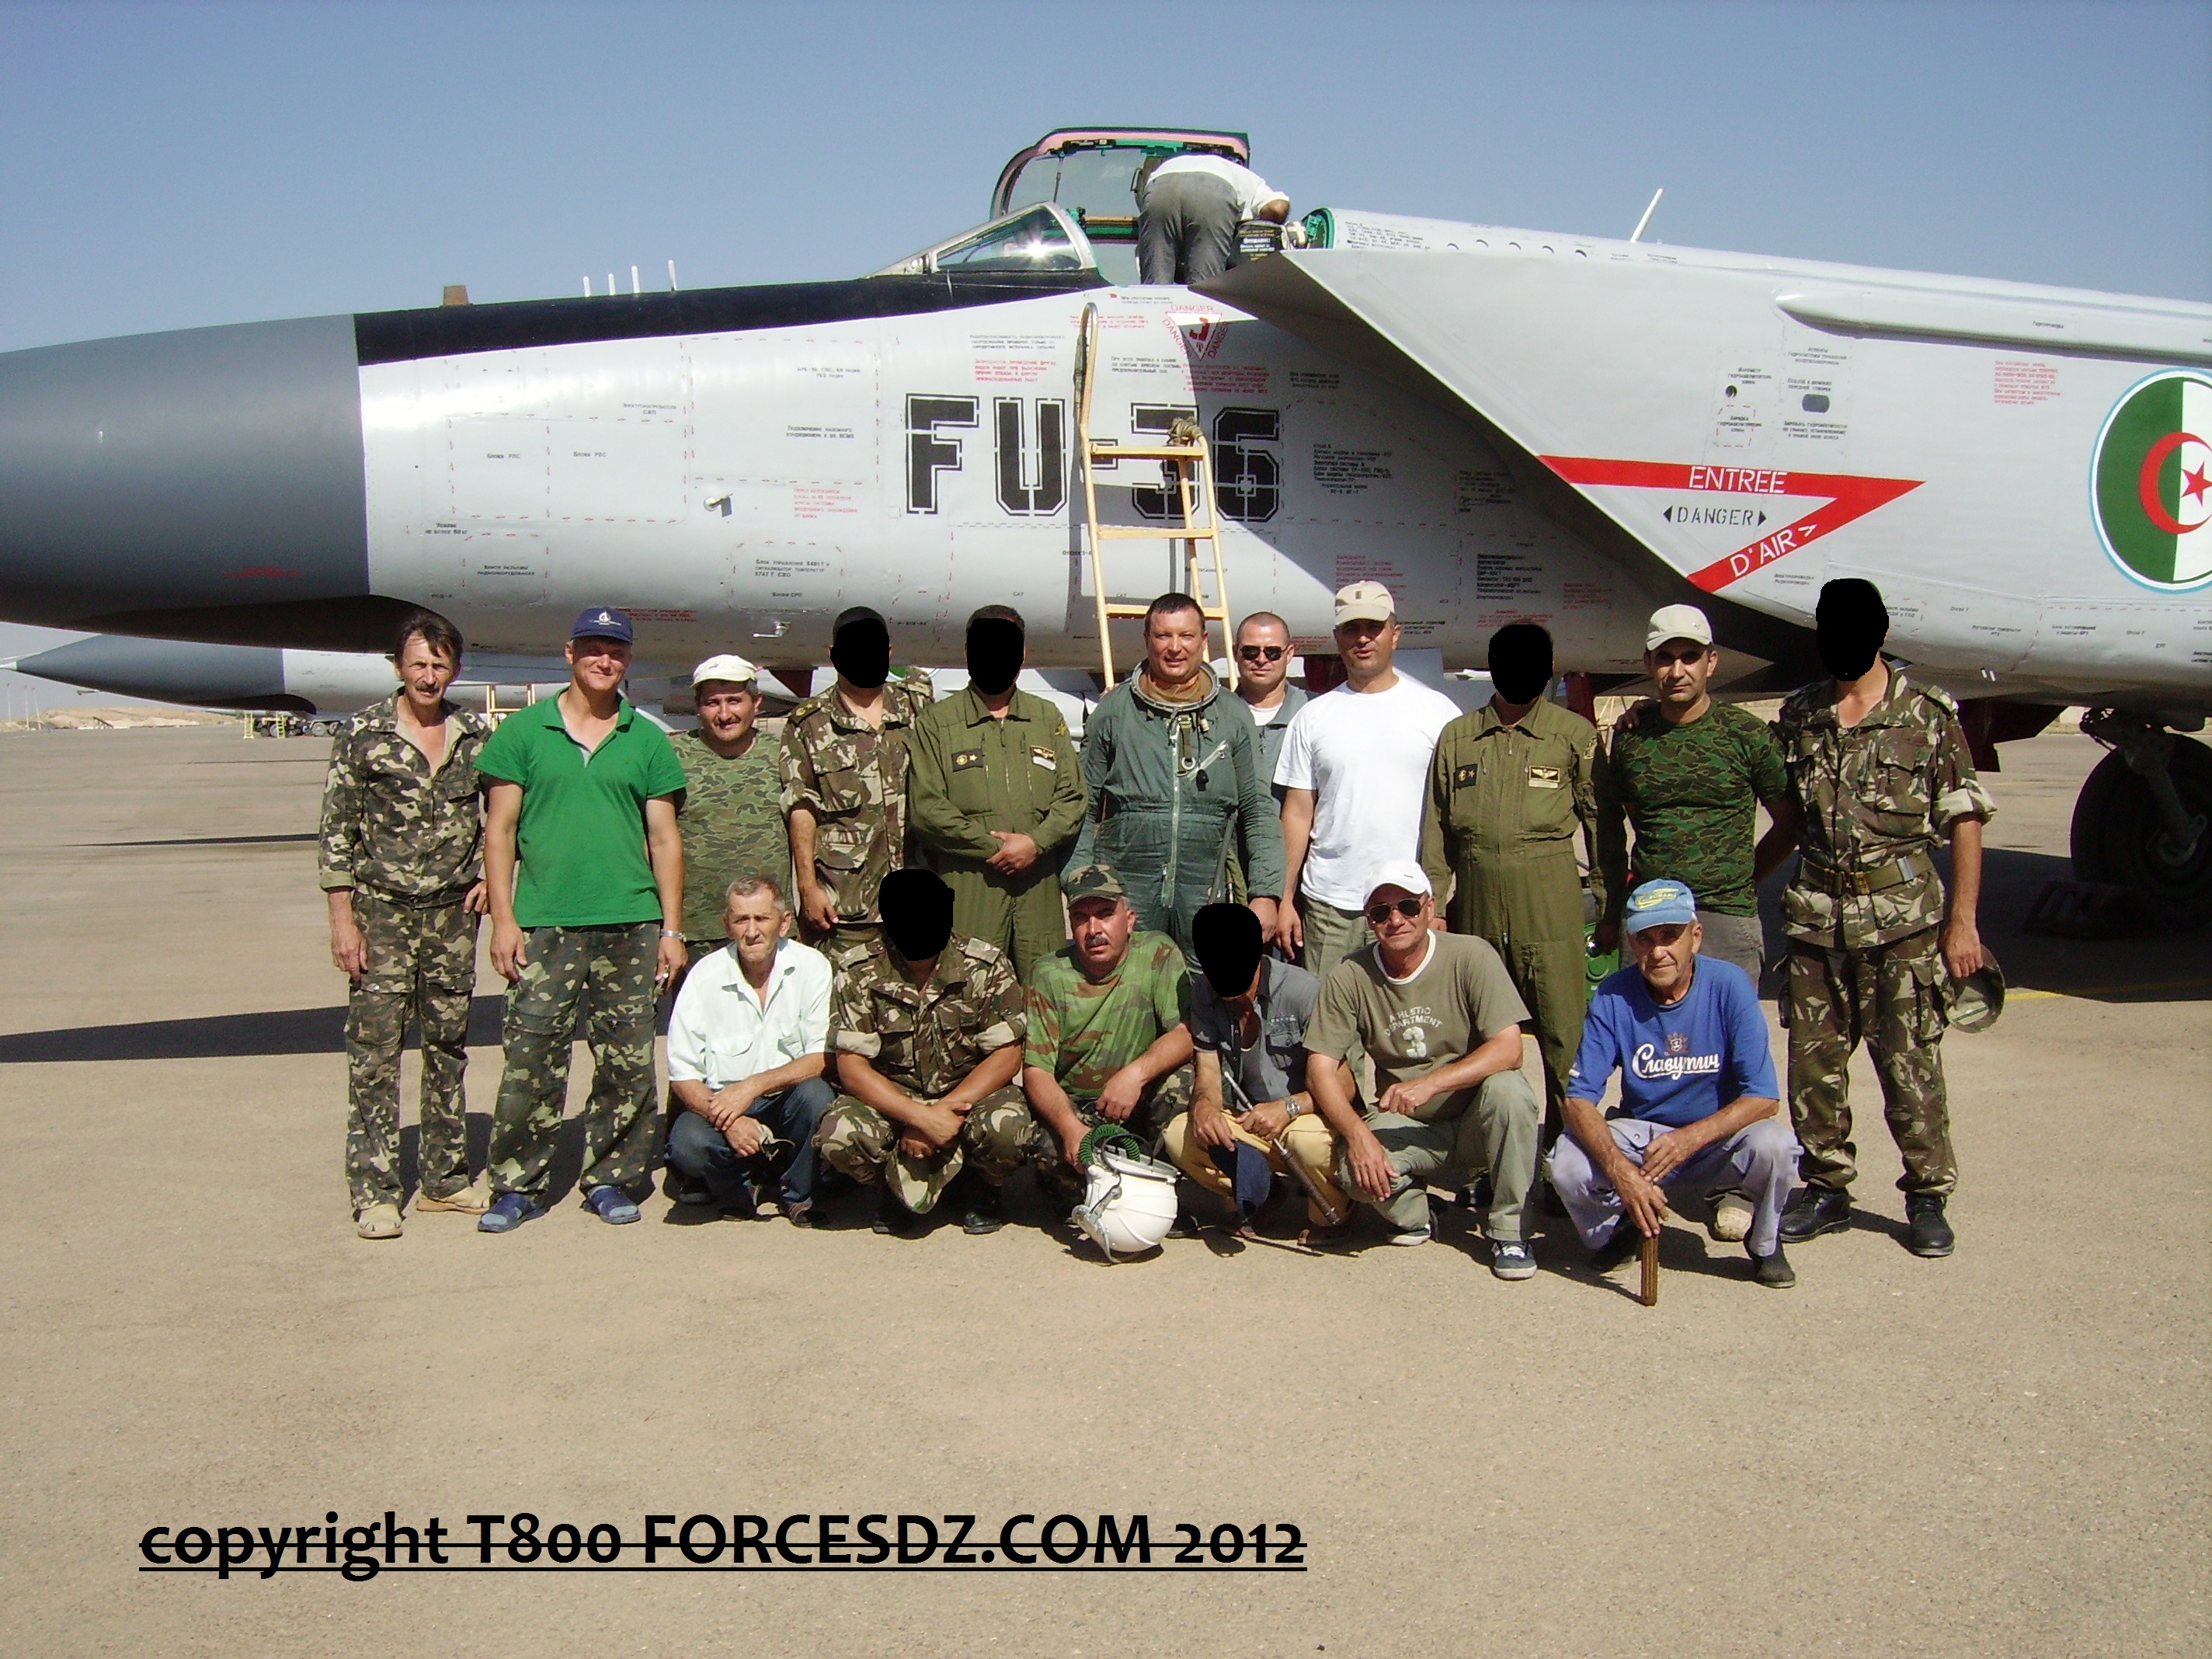 صور طائرات القوات الجوية الجزائرية [ MIG-25 / Foxbat ] - صفحة 3 701119018